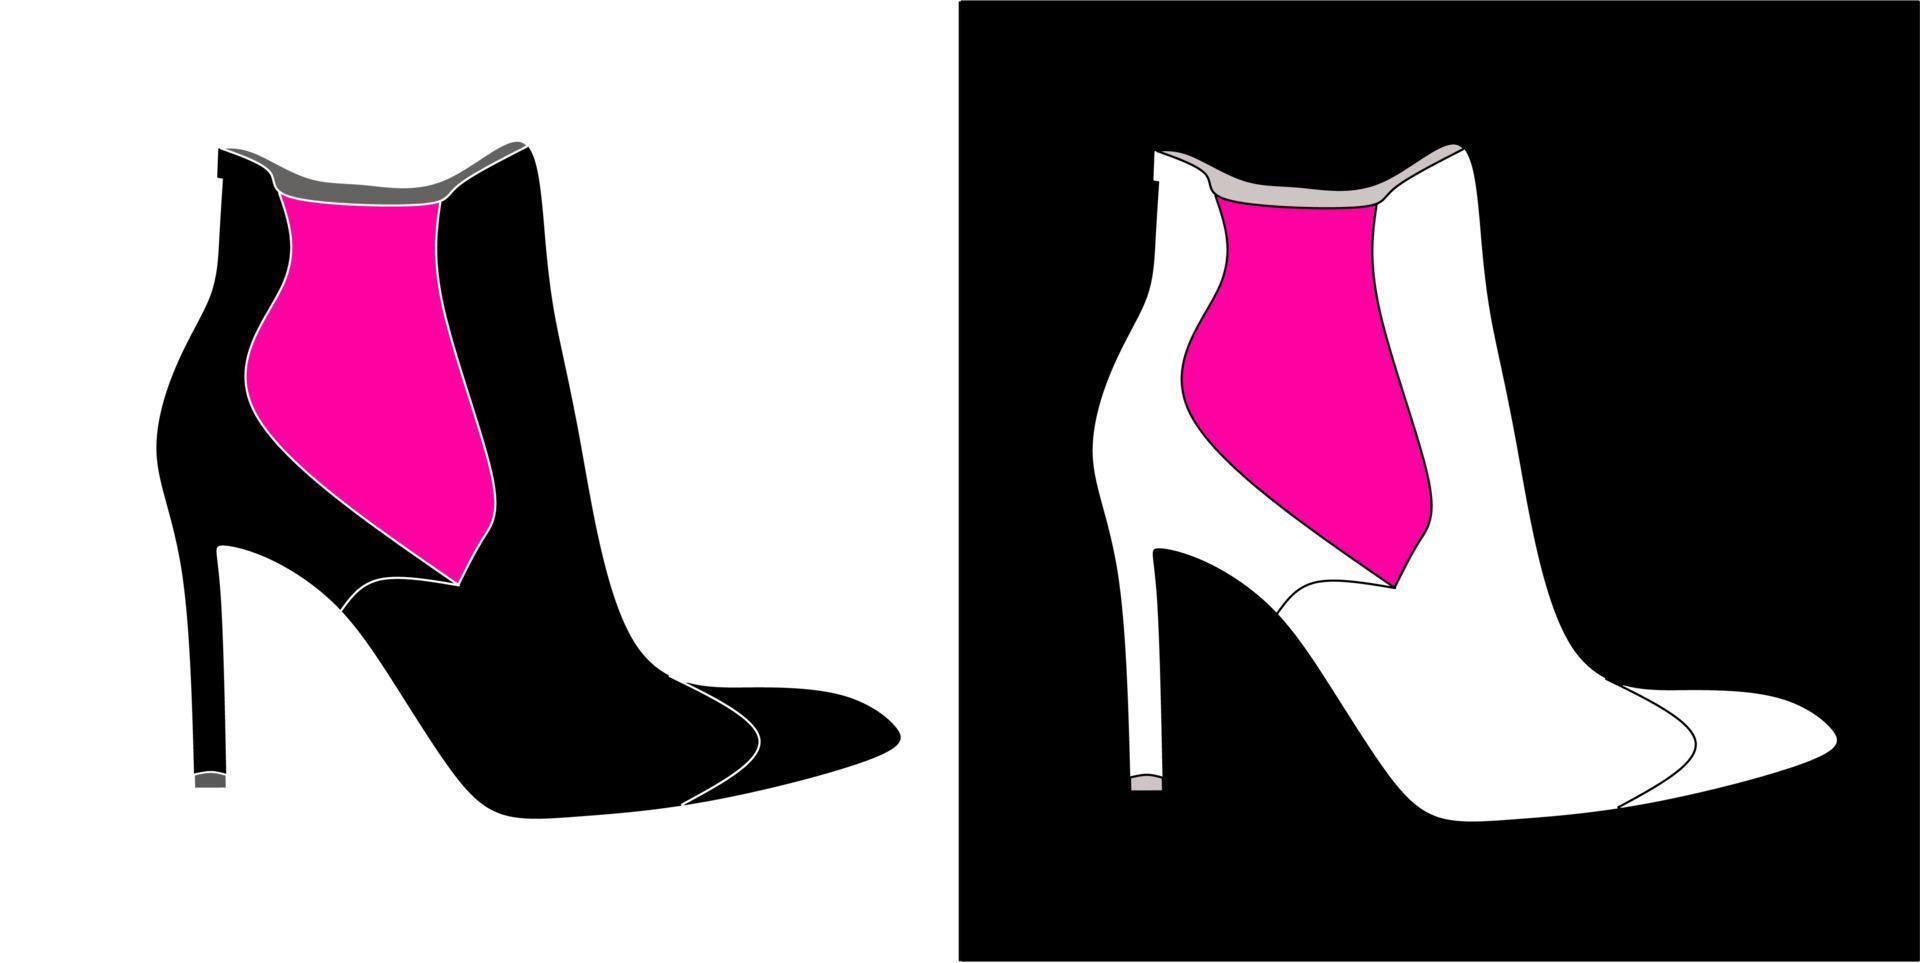 ilustração vetorial de sapatos, isolados no design de fundo preto e branco vetor